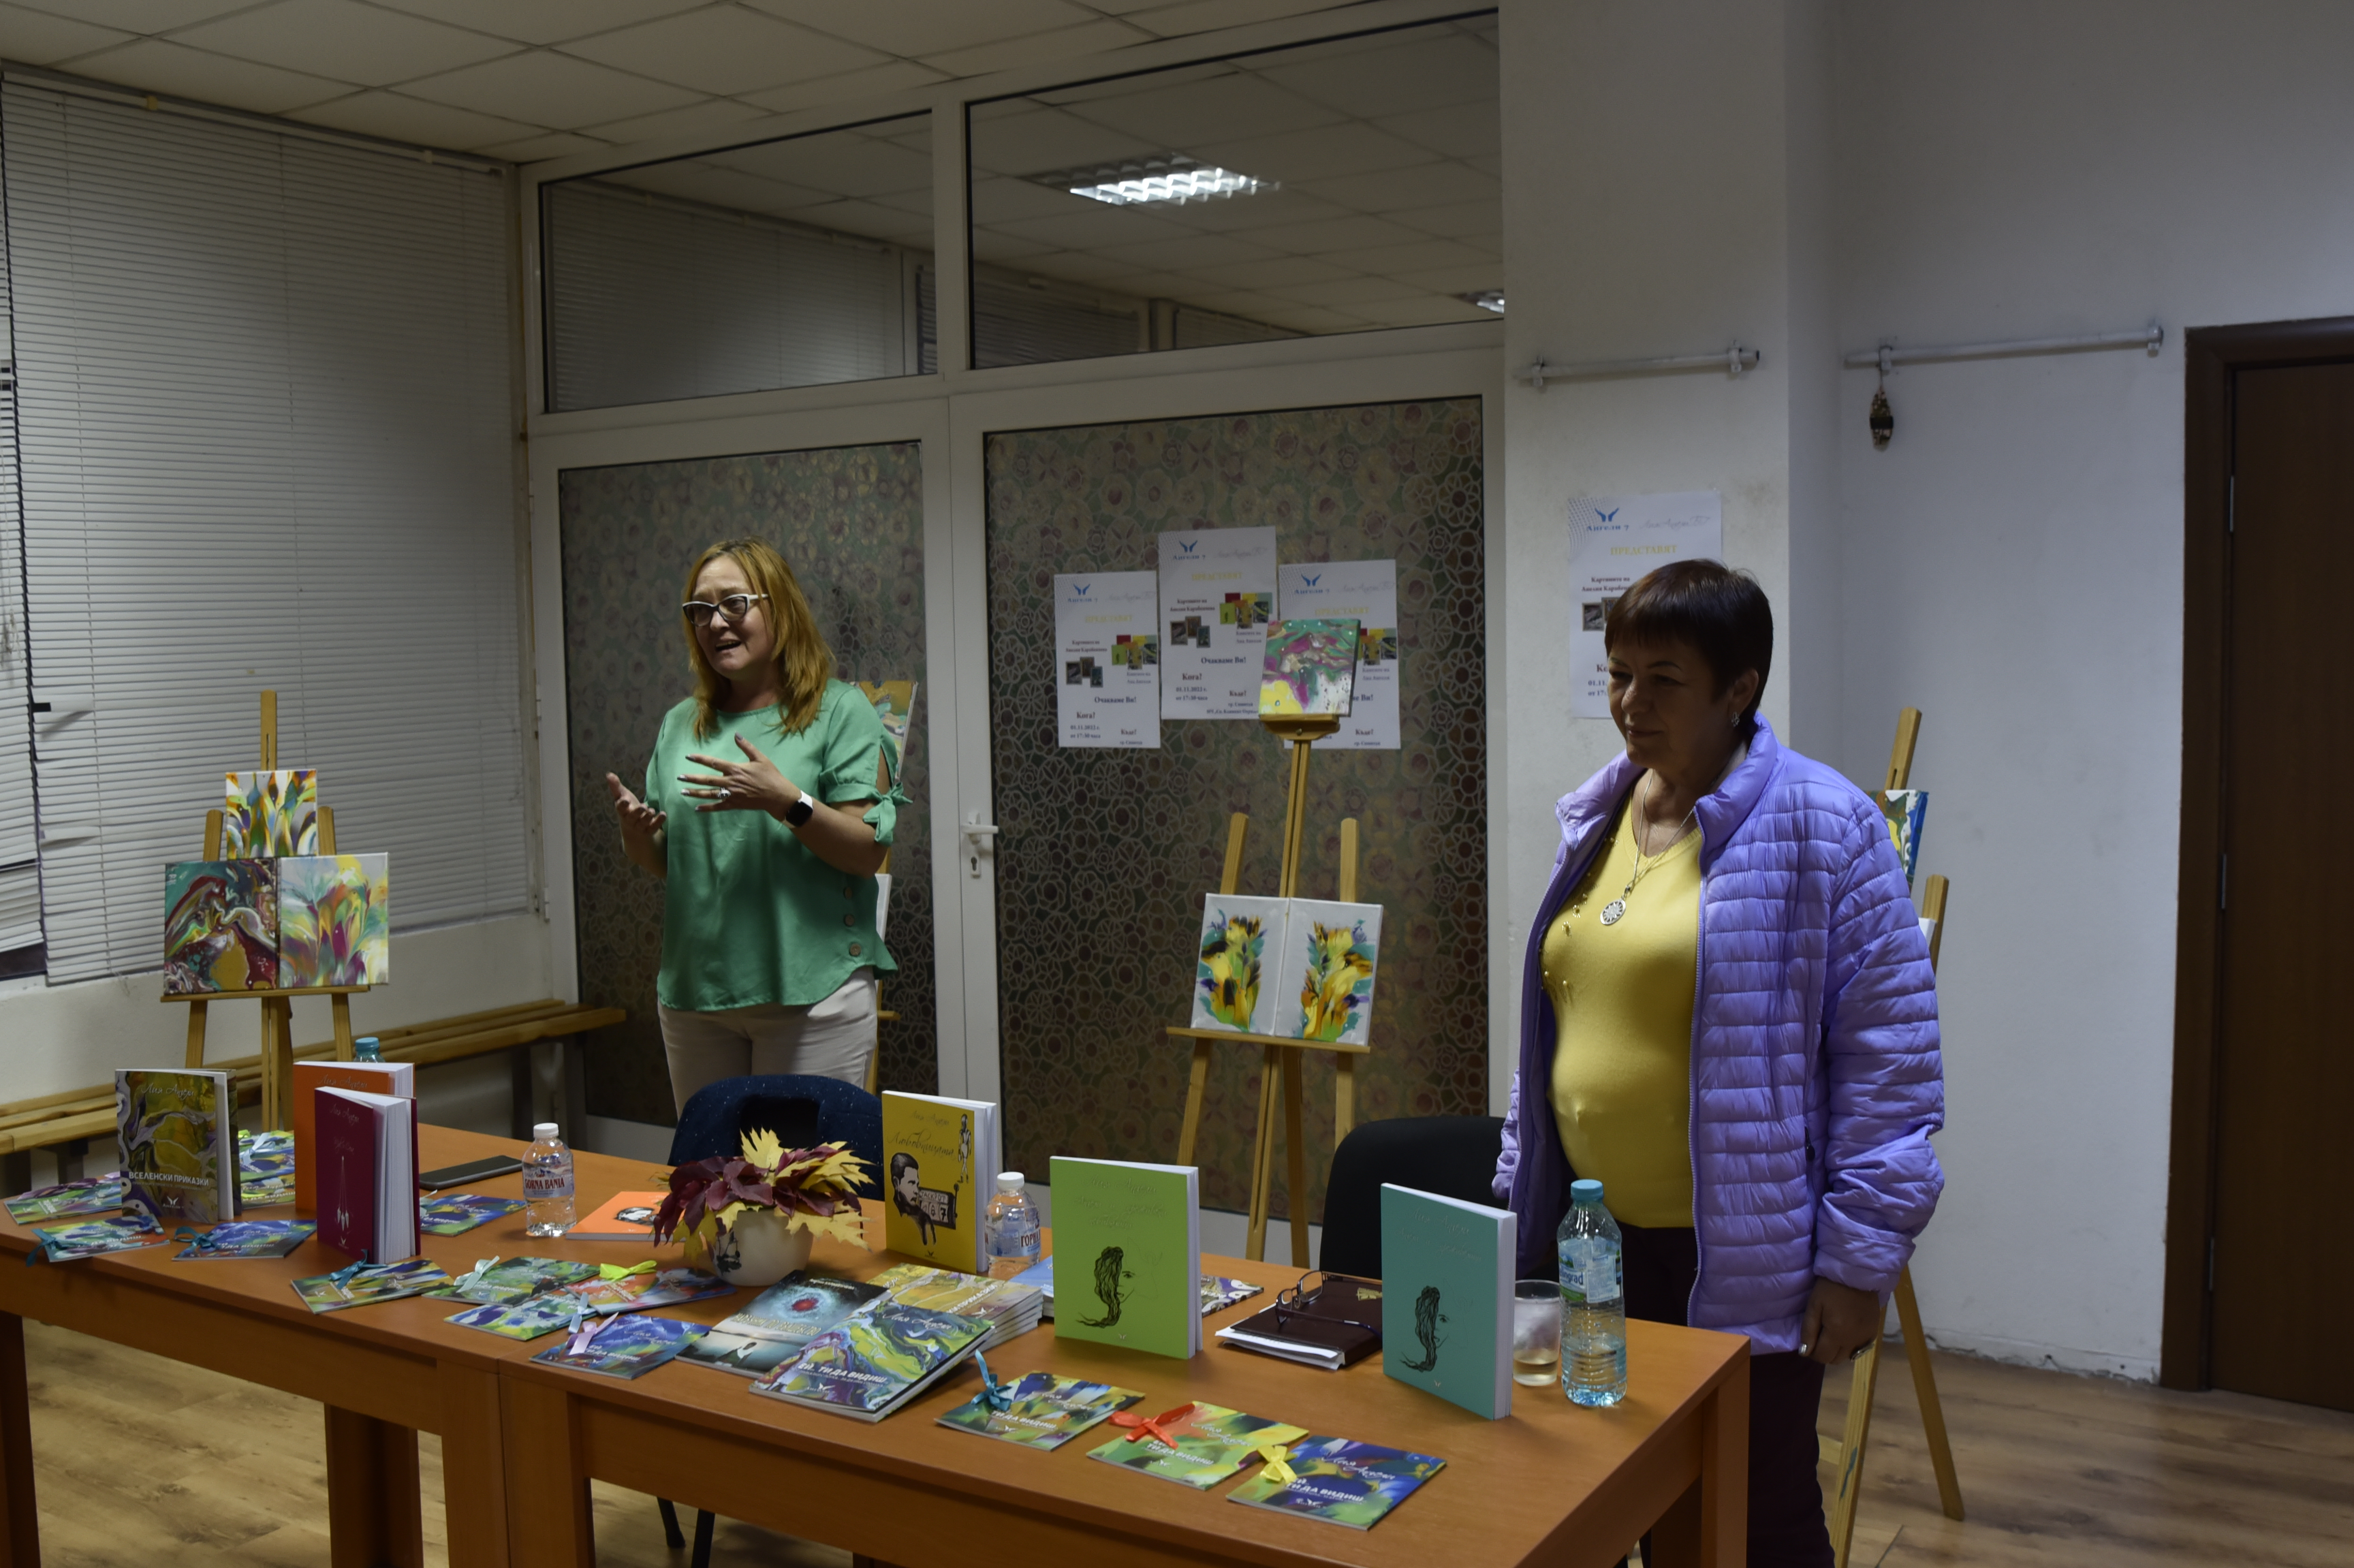 Представяне на творчеството на художничката Анелия Карабенчева и писателката Лия Ангели в община Симитли